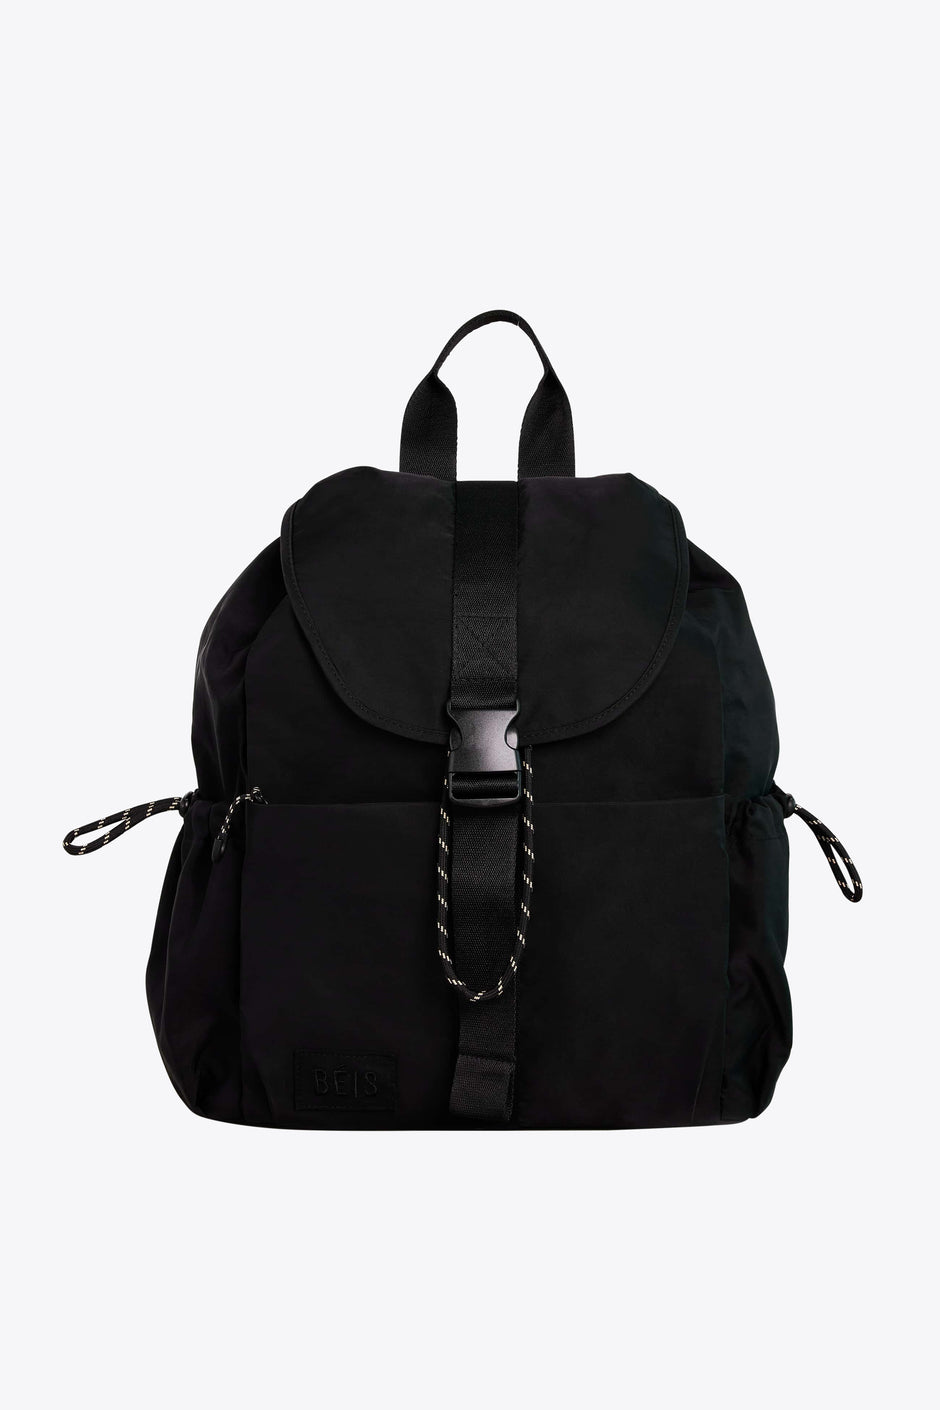 Backpacks - Travel Backpacks for the Chic Traveler